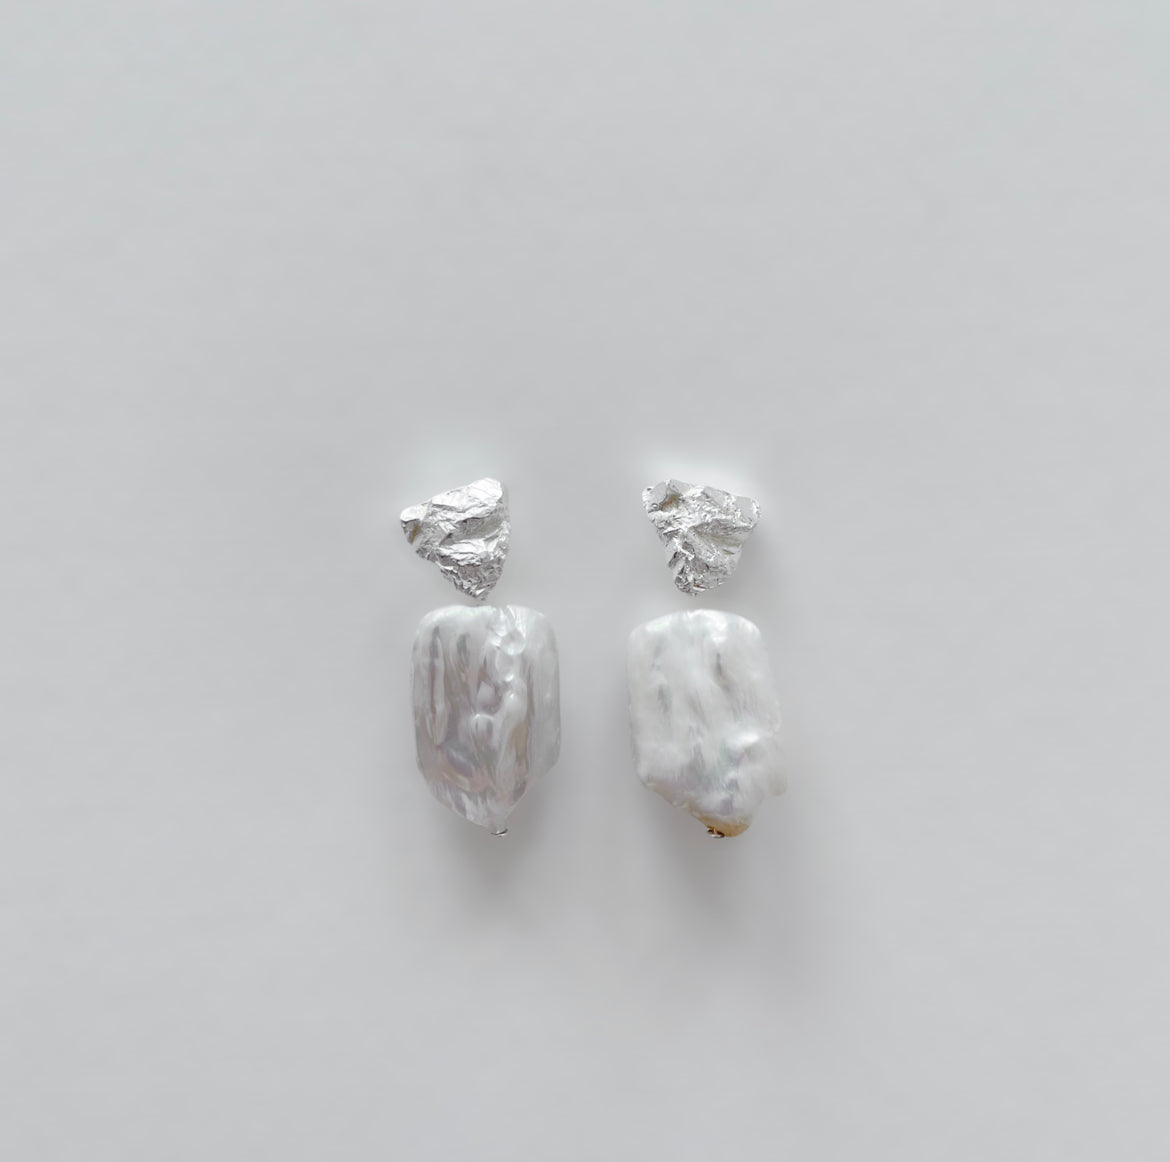 Cliff earrings